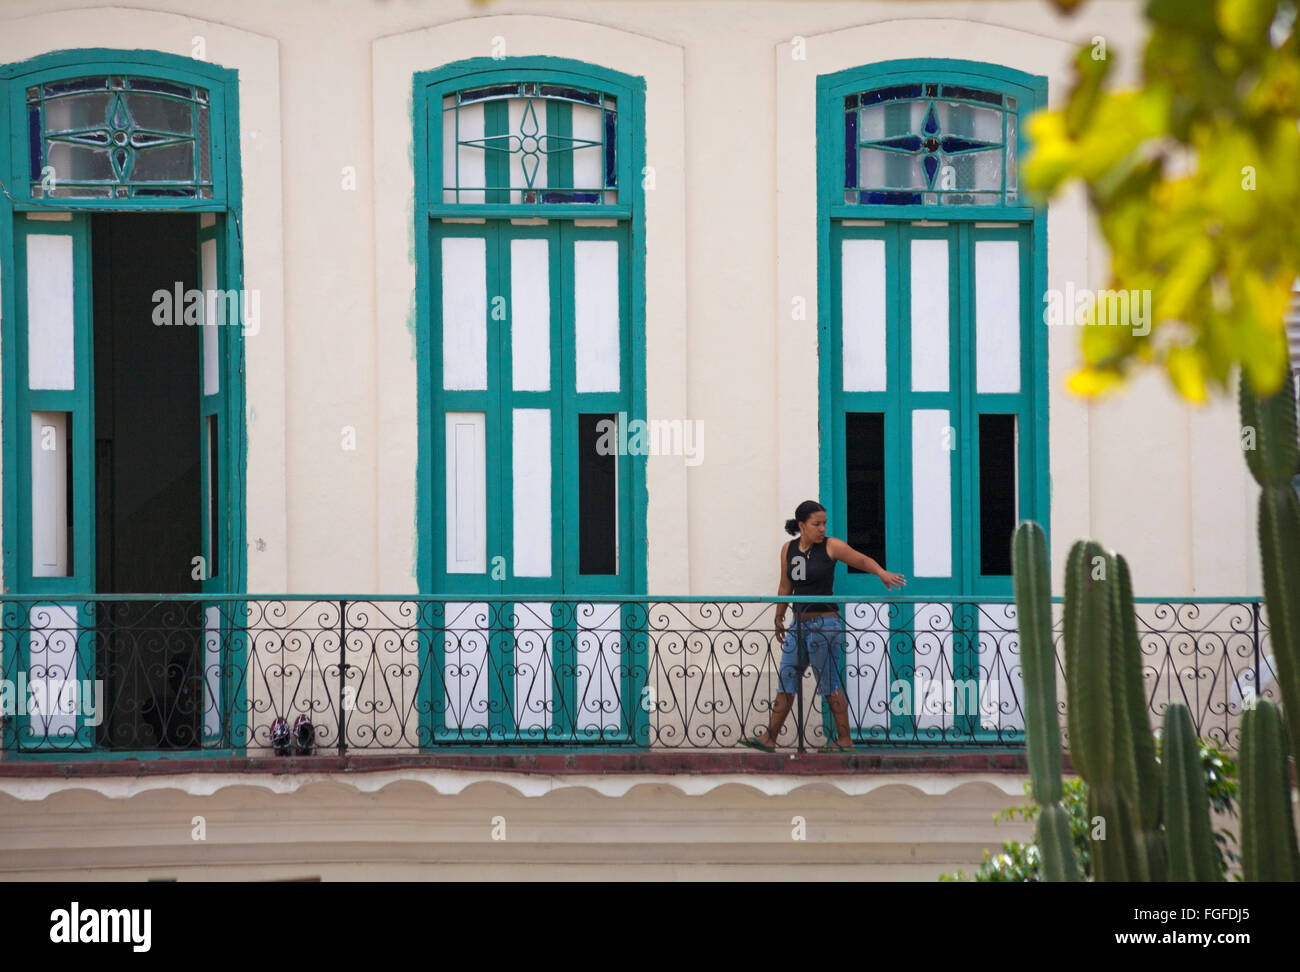 La vie quotidienne à Cuba - Cuban woman walking along balcon à La Havane, Cuba, Antilles, Caraïbes, Amérique Centrale Banque D'Images